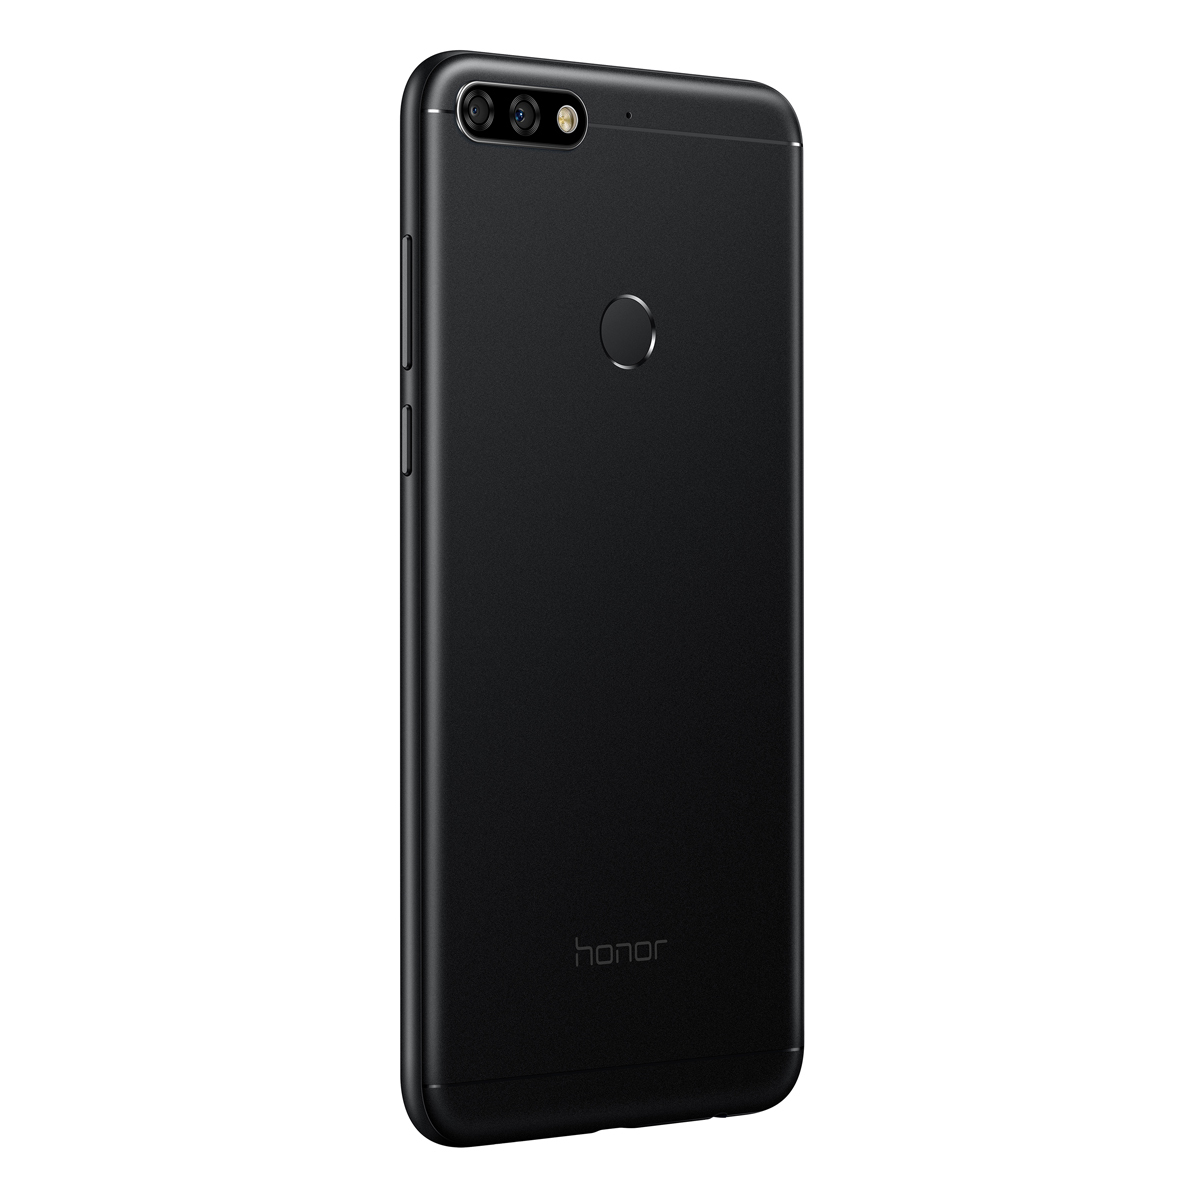 Телефон honor 7c. Honor 7c Pro. Huawei Honor 7c Pro. Хонор 7c. Honor 7c черный.